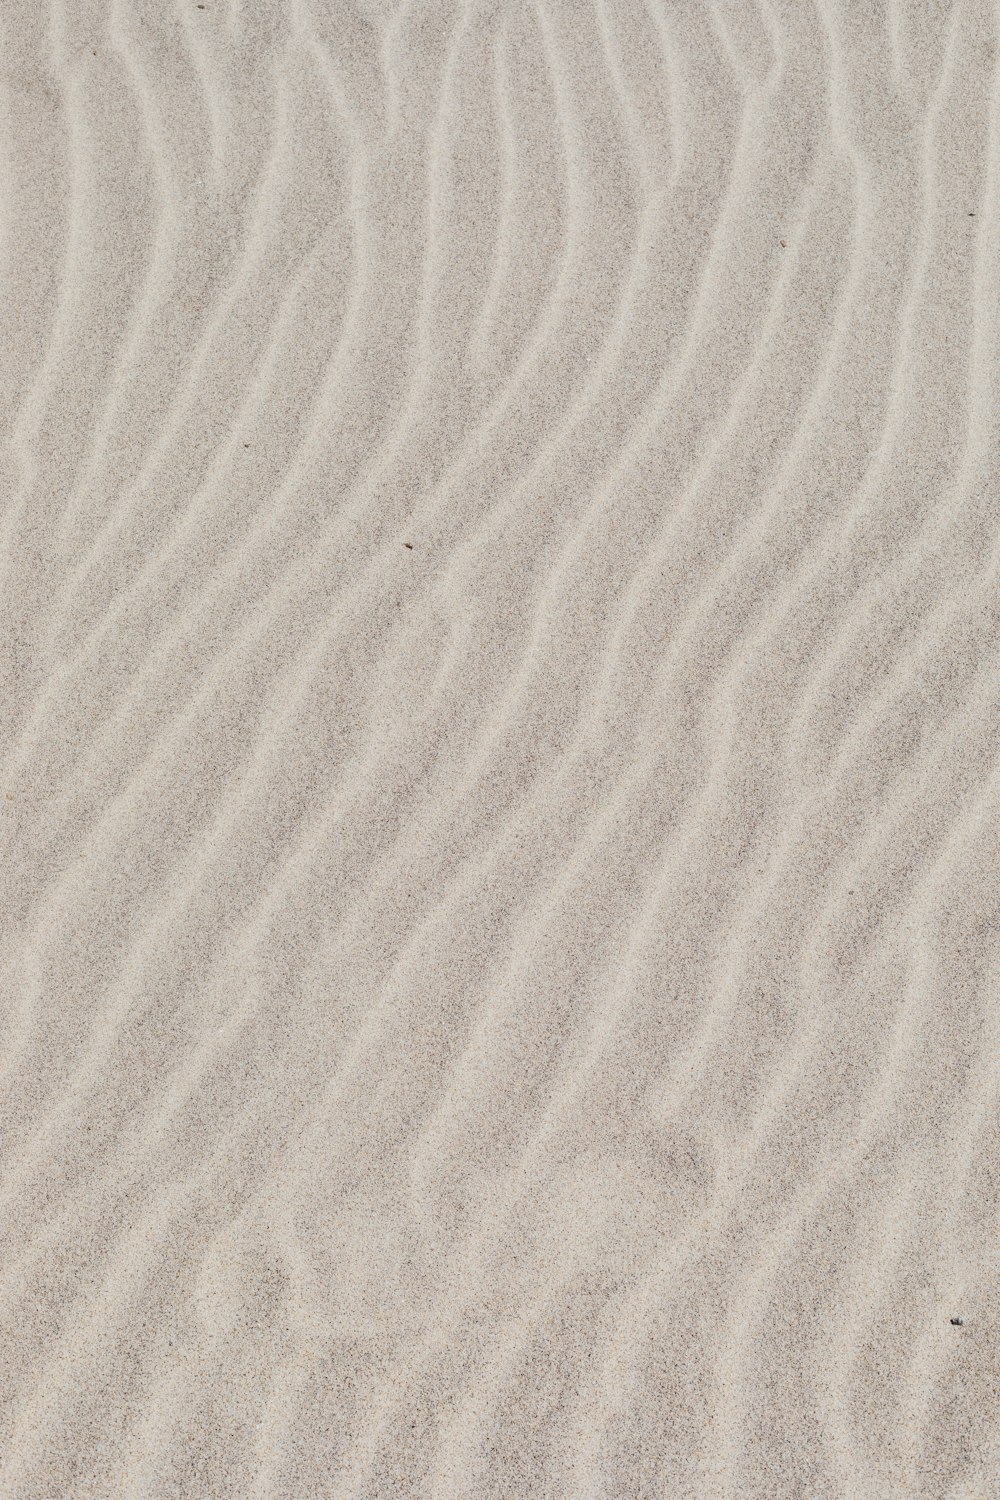 sable blanc avec l’ombre de la personne